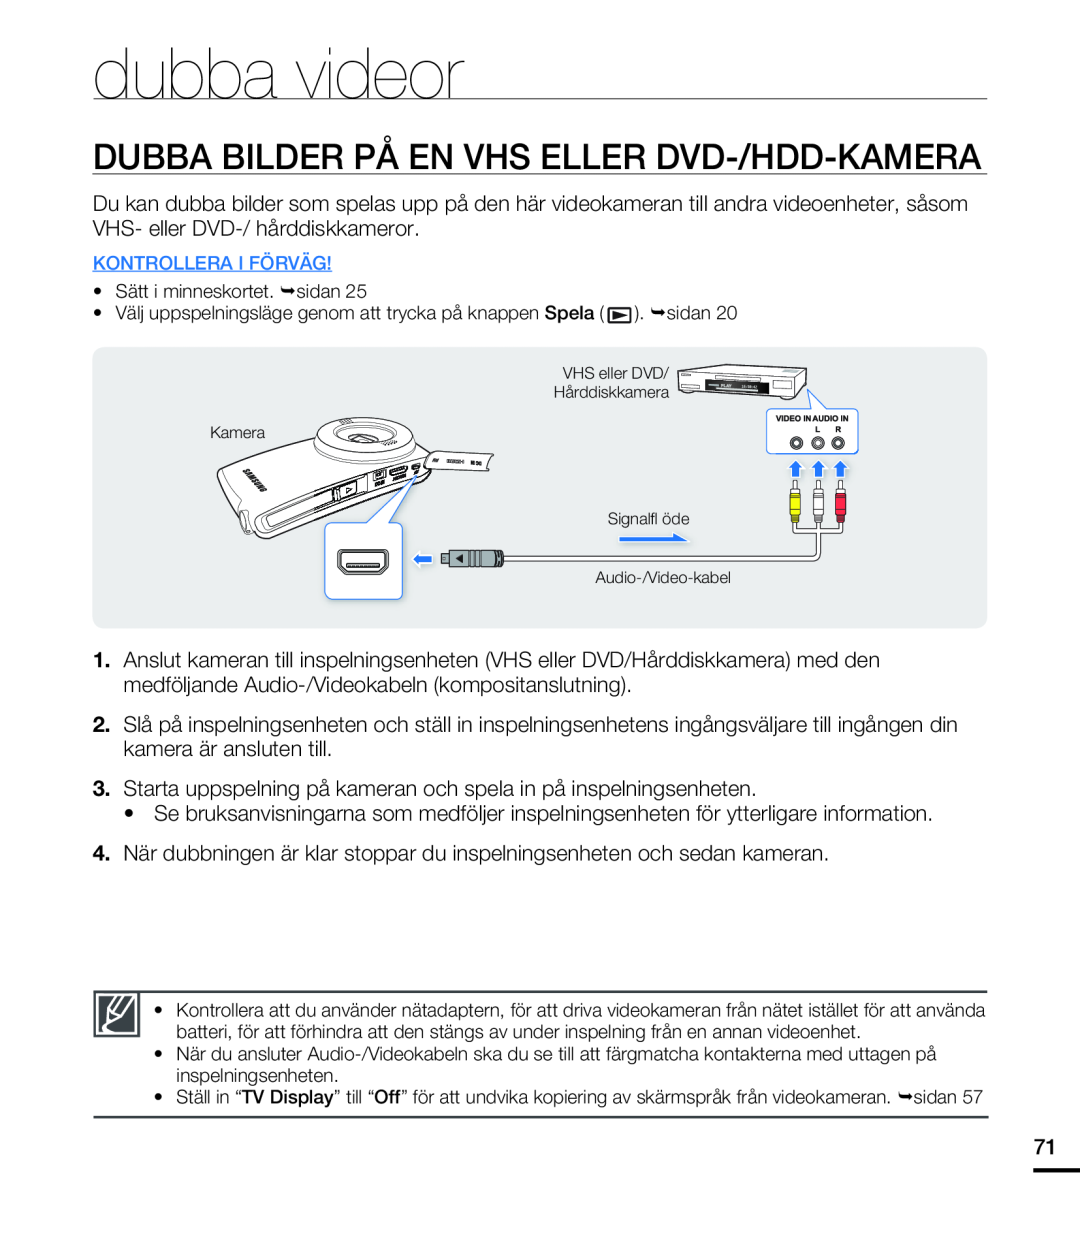 Samsung HMX-U20BP/EDC manual dubba videor, Dubba Bilder På En Vhs Eller Dvd-/Hdd-Kamera 